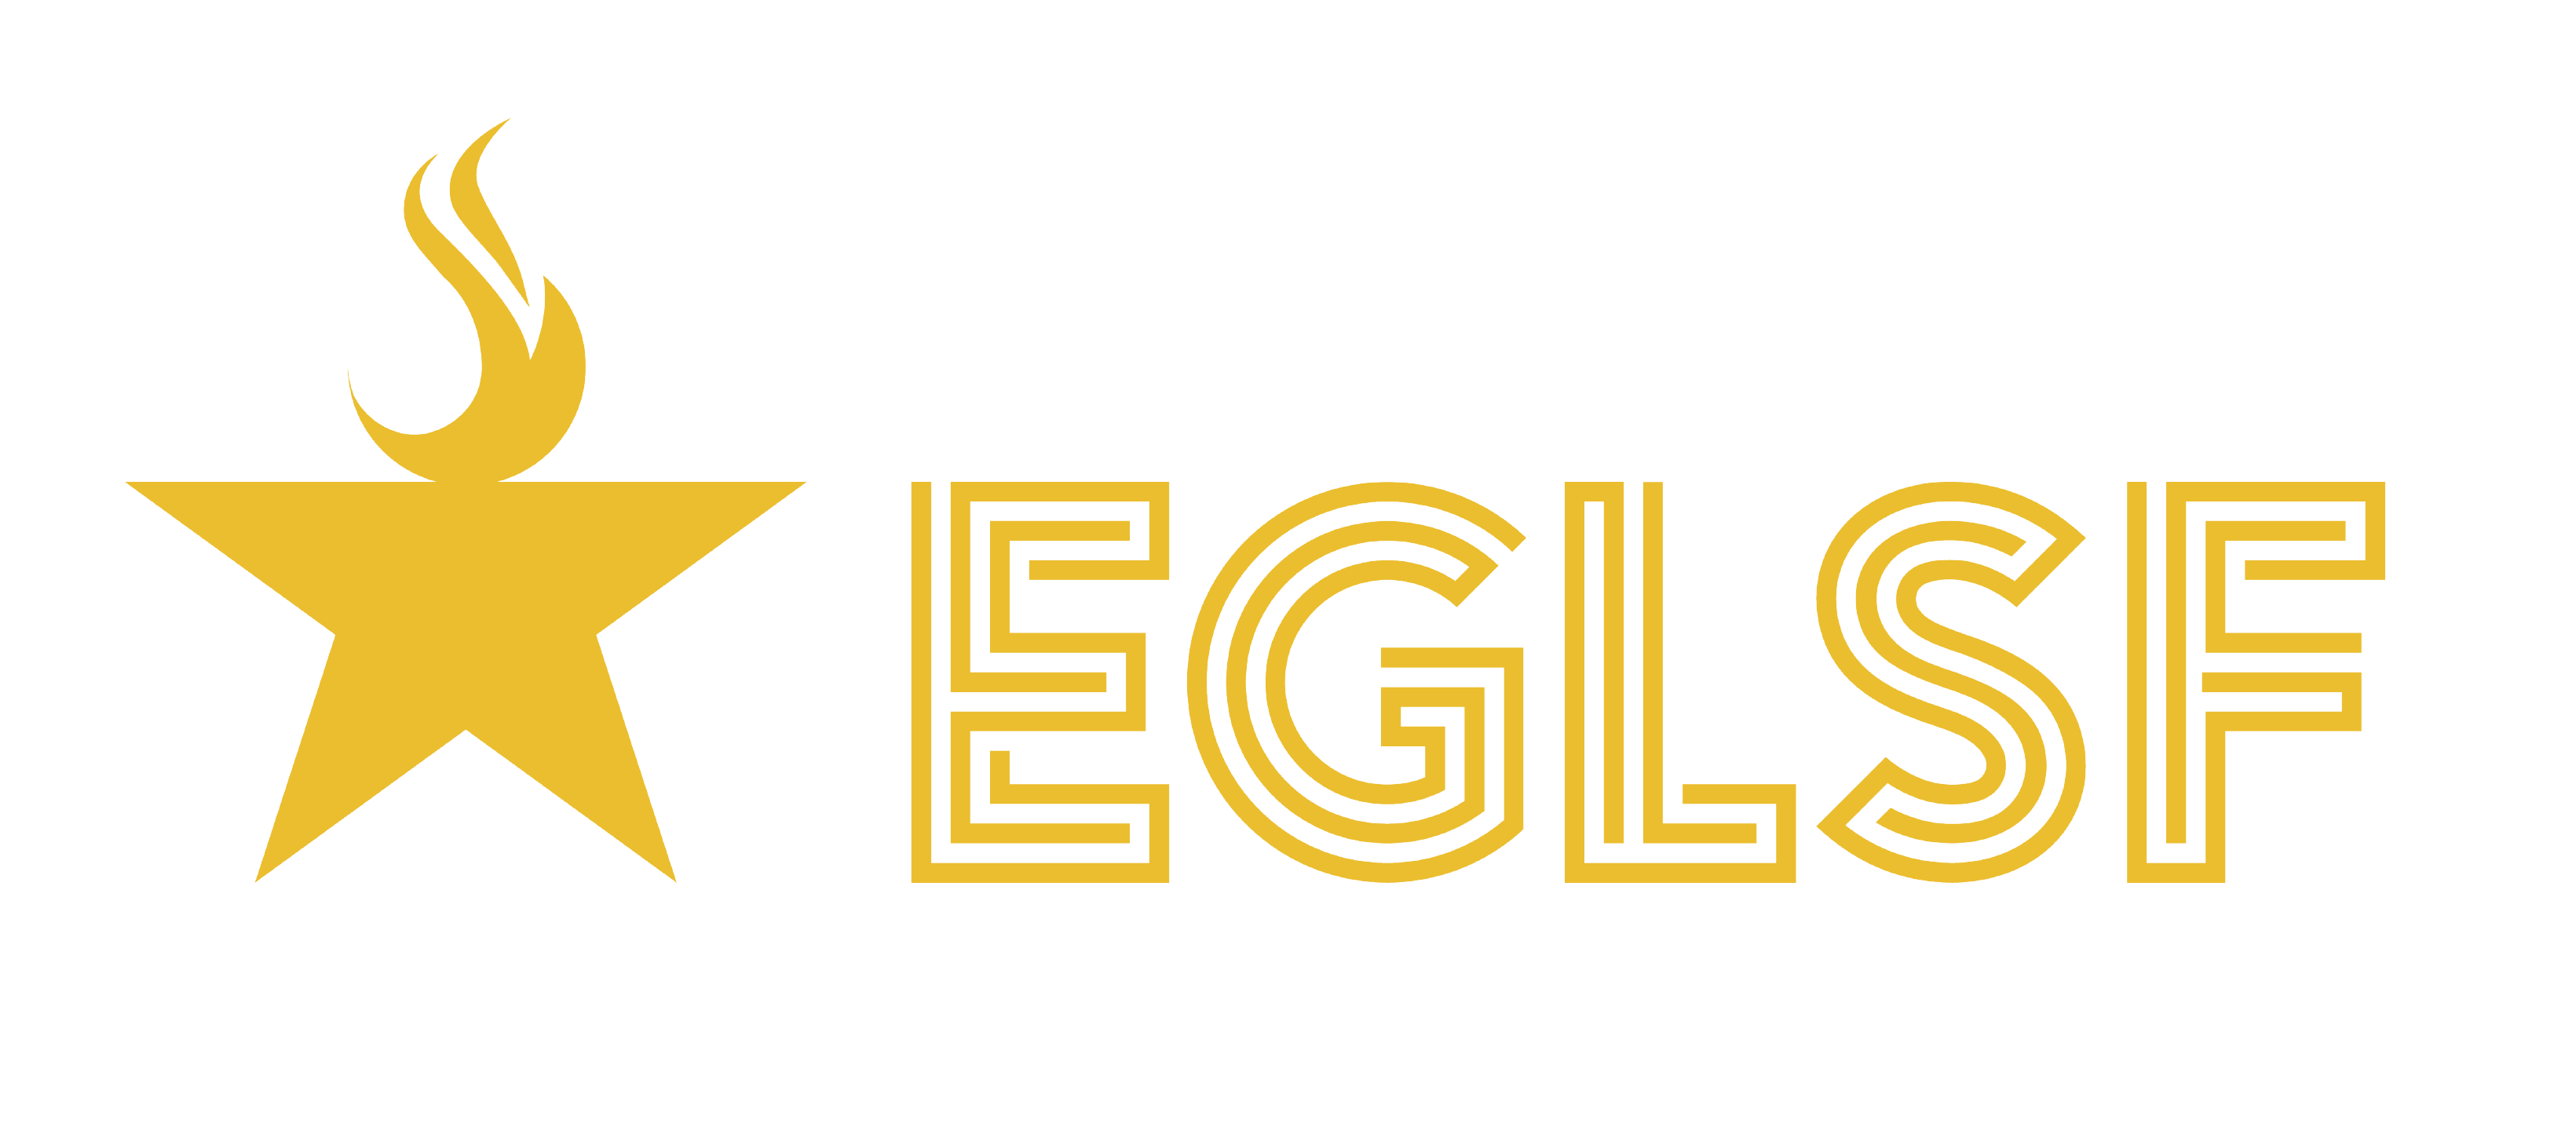 Logo Eglsf Gold2